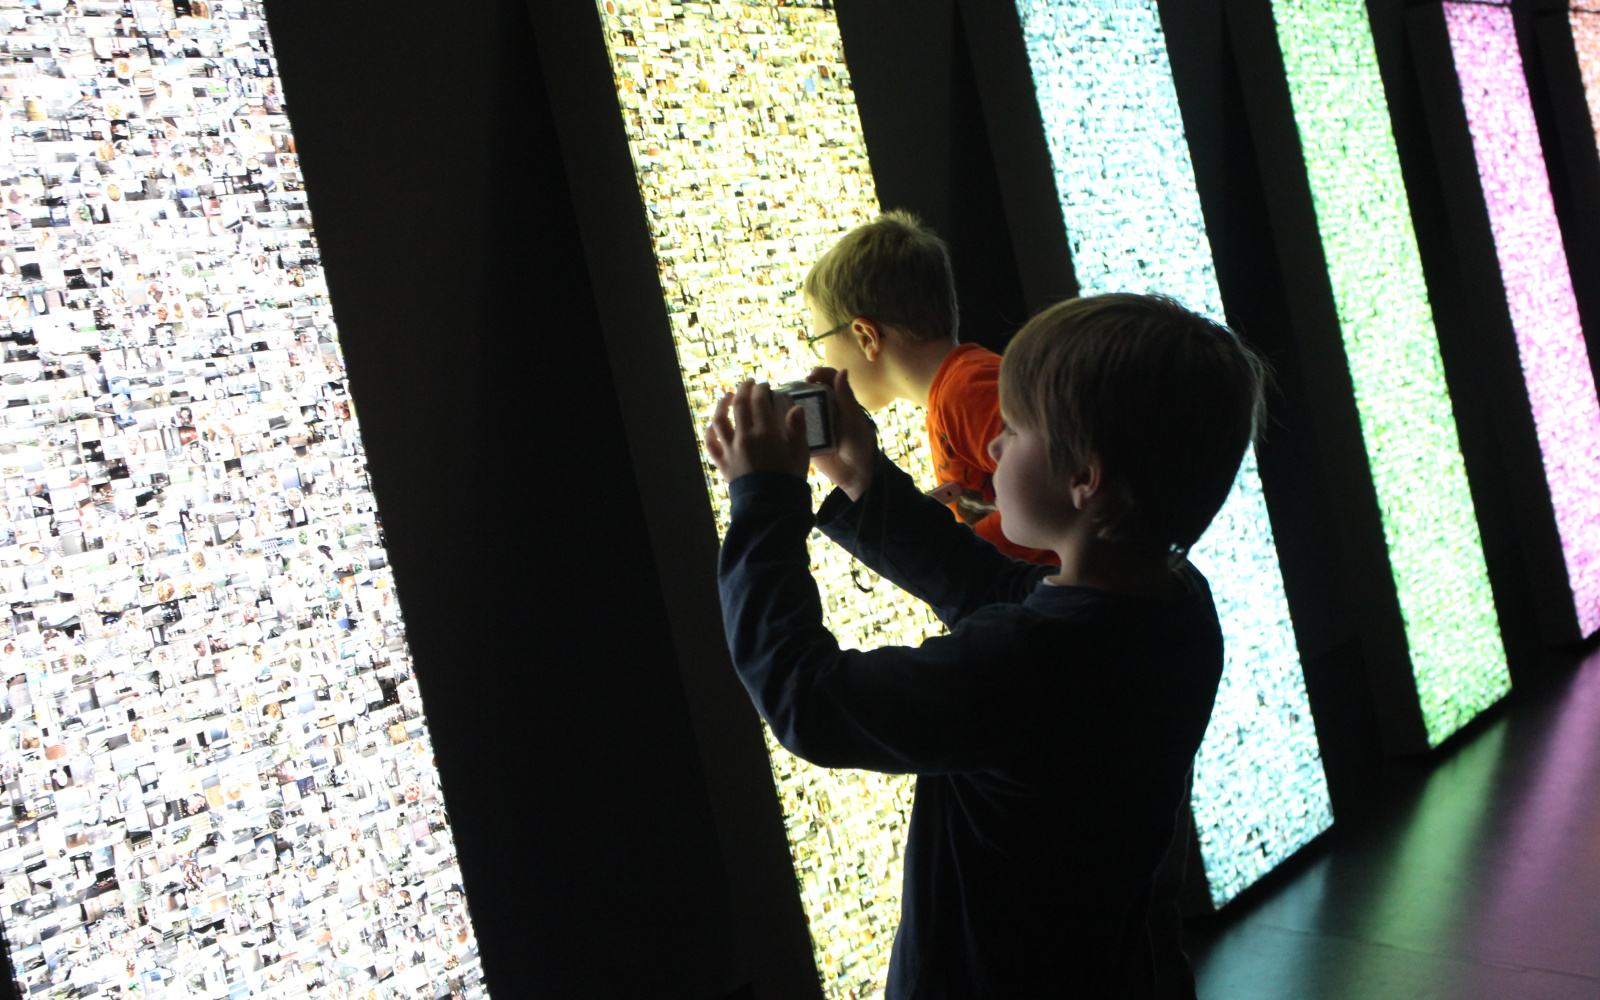 Zwei Kinder stehen vor einer Leuchtwand. Eines fotografiert gerade die Installation, das andere hat das Gesicht ganz nah am Kunstwerk um die kleinen Bilder genauer zu betrachten, die erleuchtet werden.